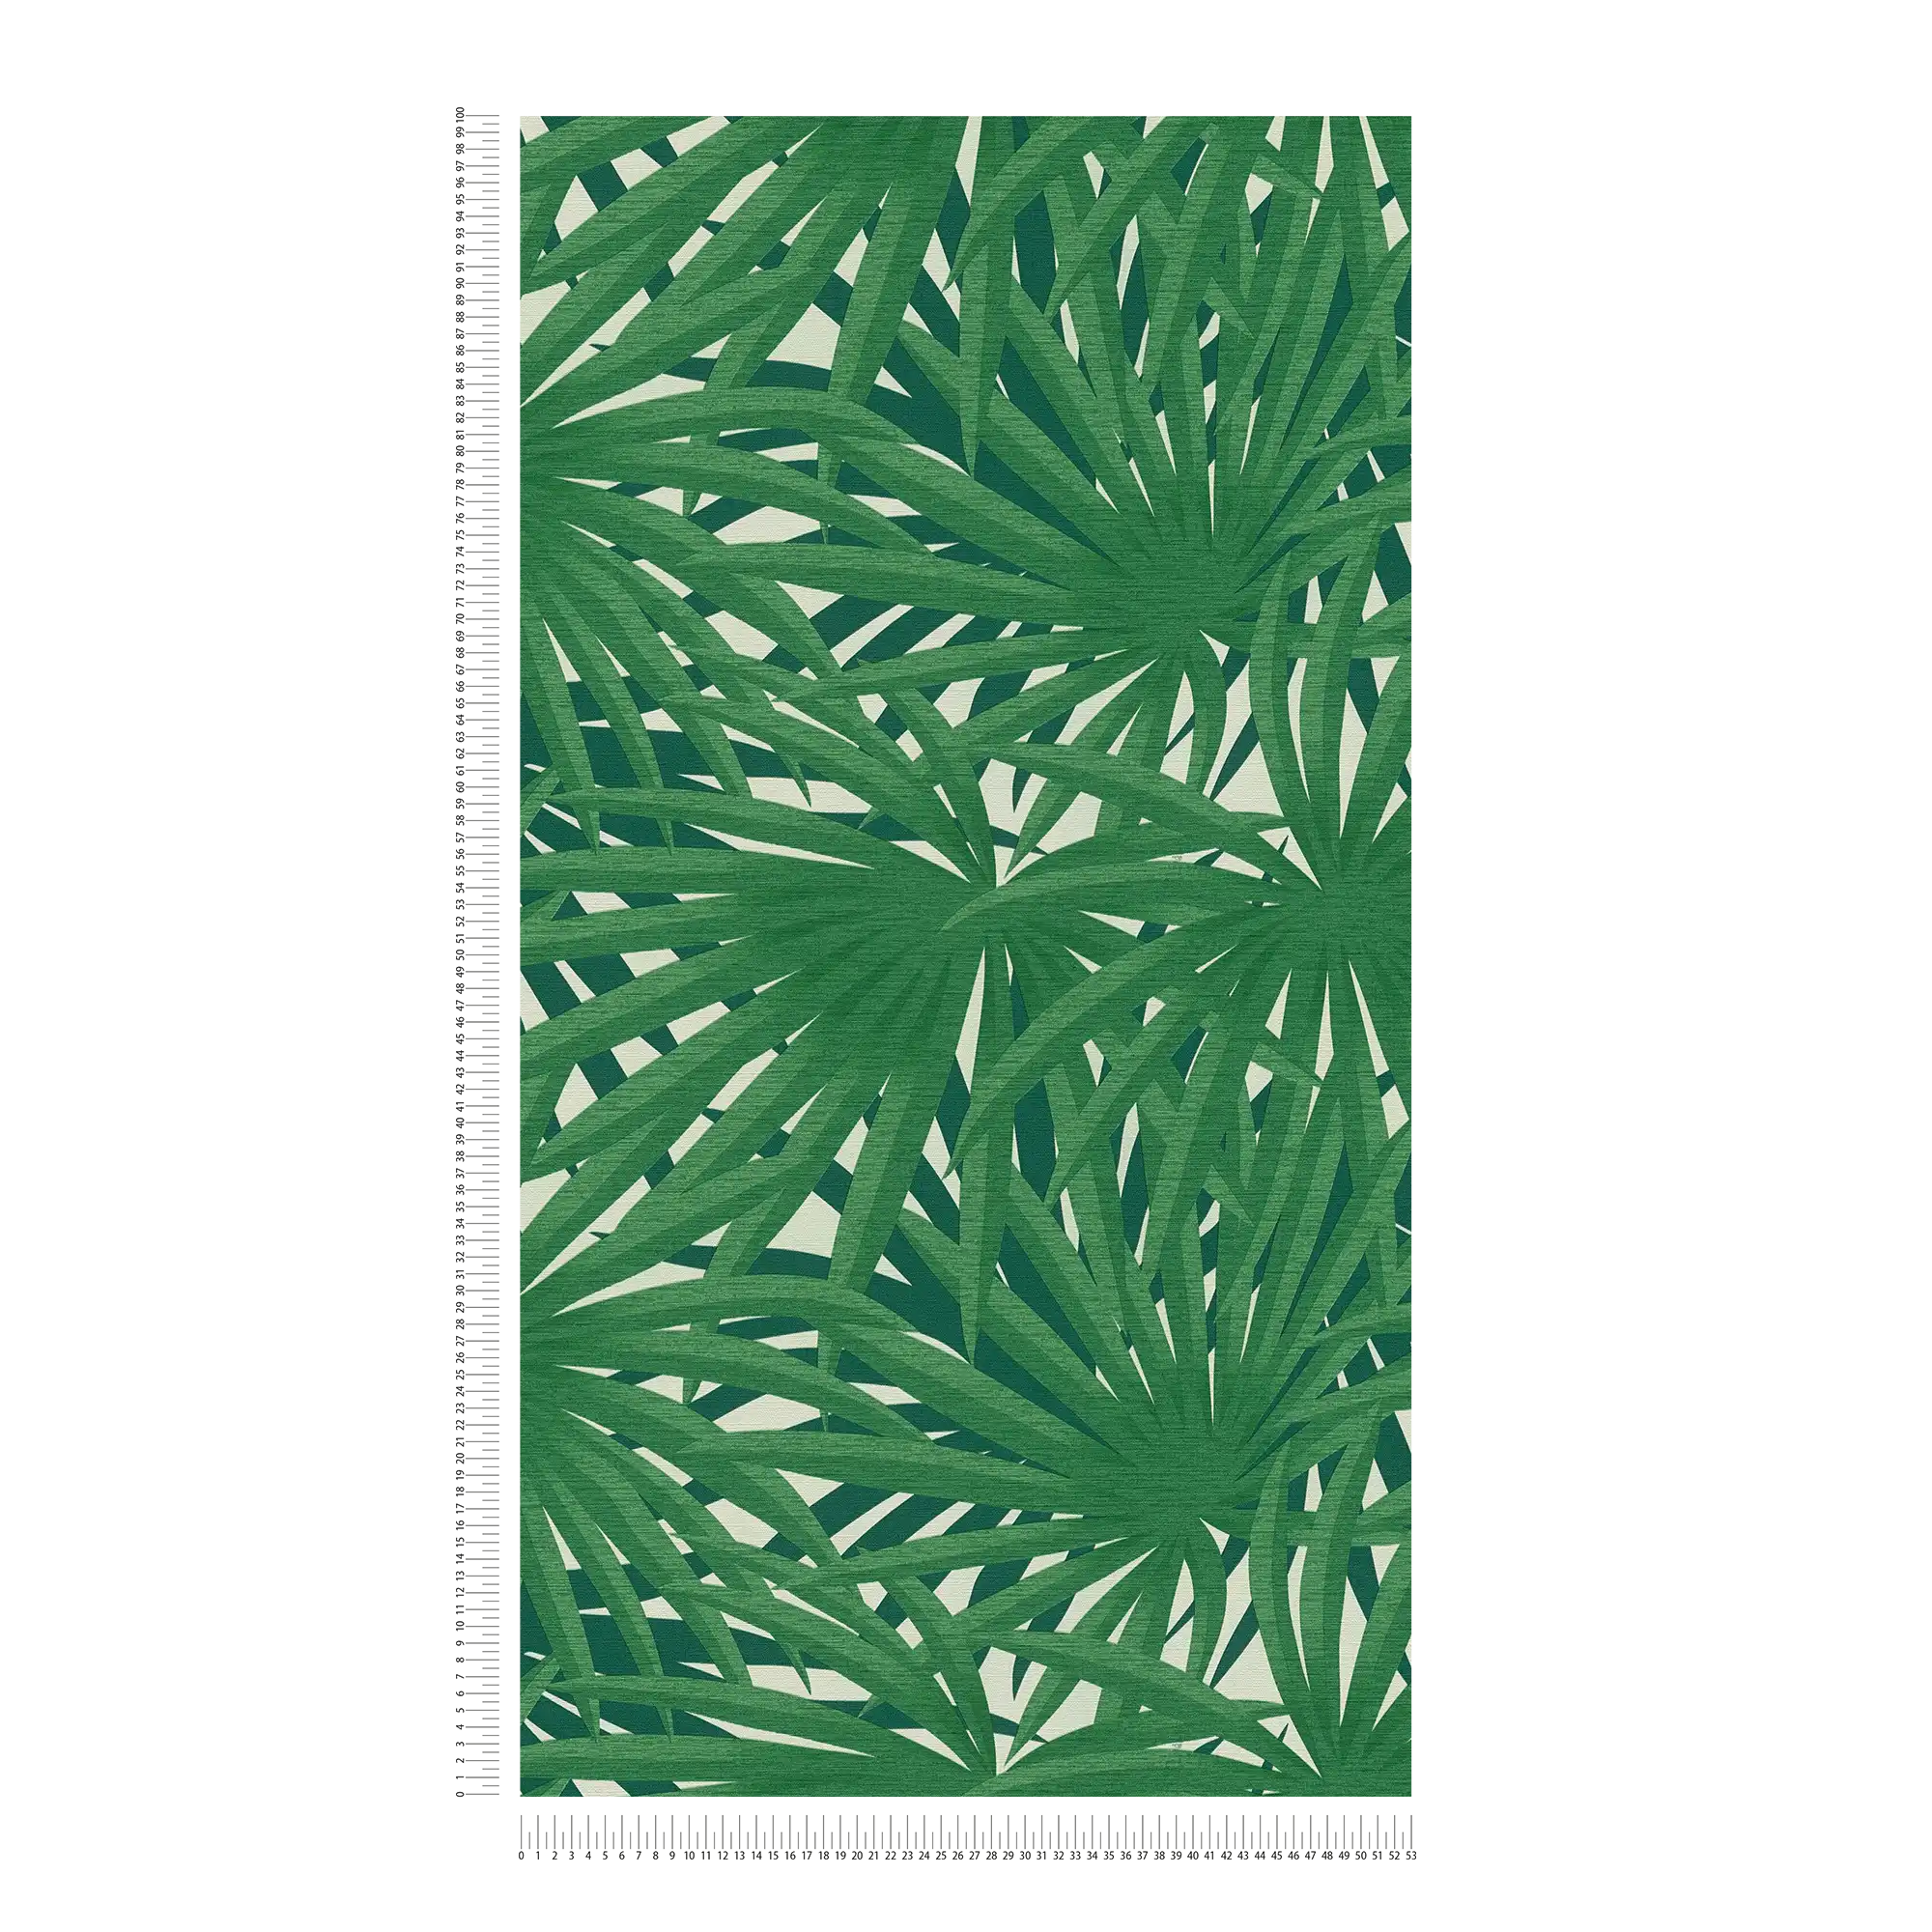             Tropische Tapete mit Dschungeldesign & Metallic-Glanz – Grün, Metallic, Weiß
        